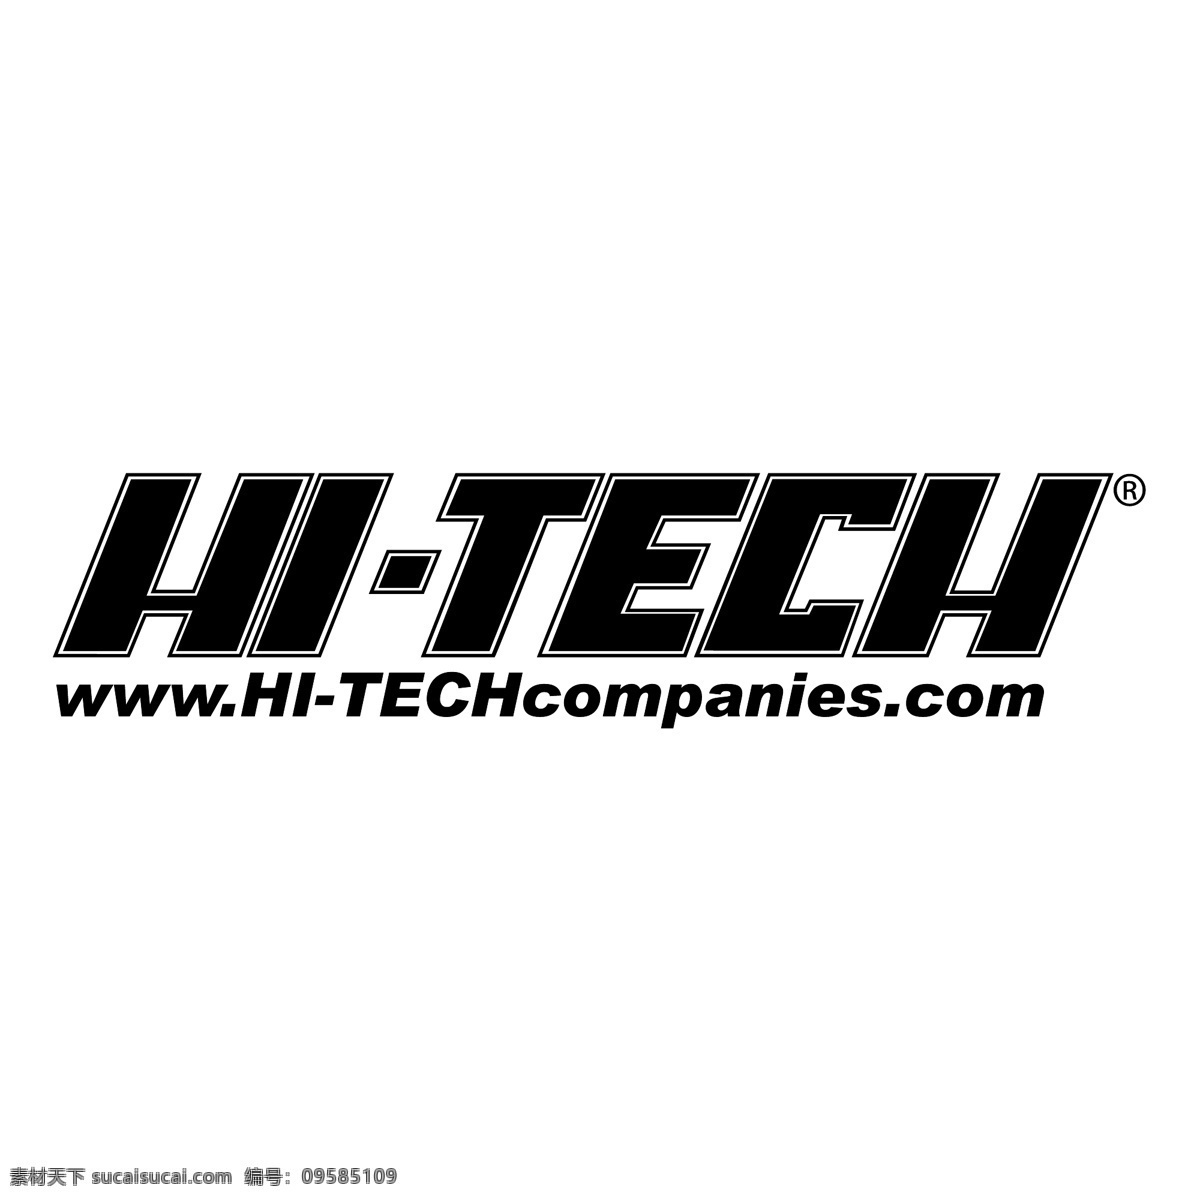 高新技术 公司 高科技 标志 免费 psd源文件 logo设计